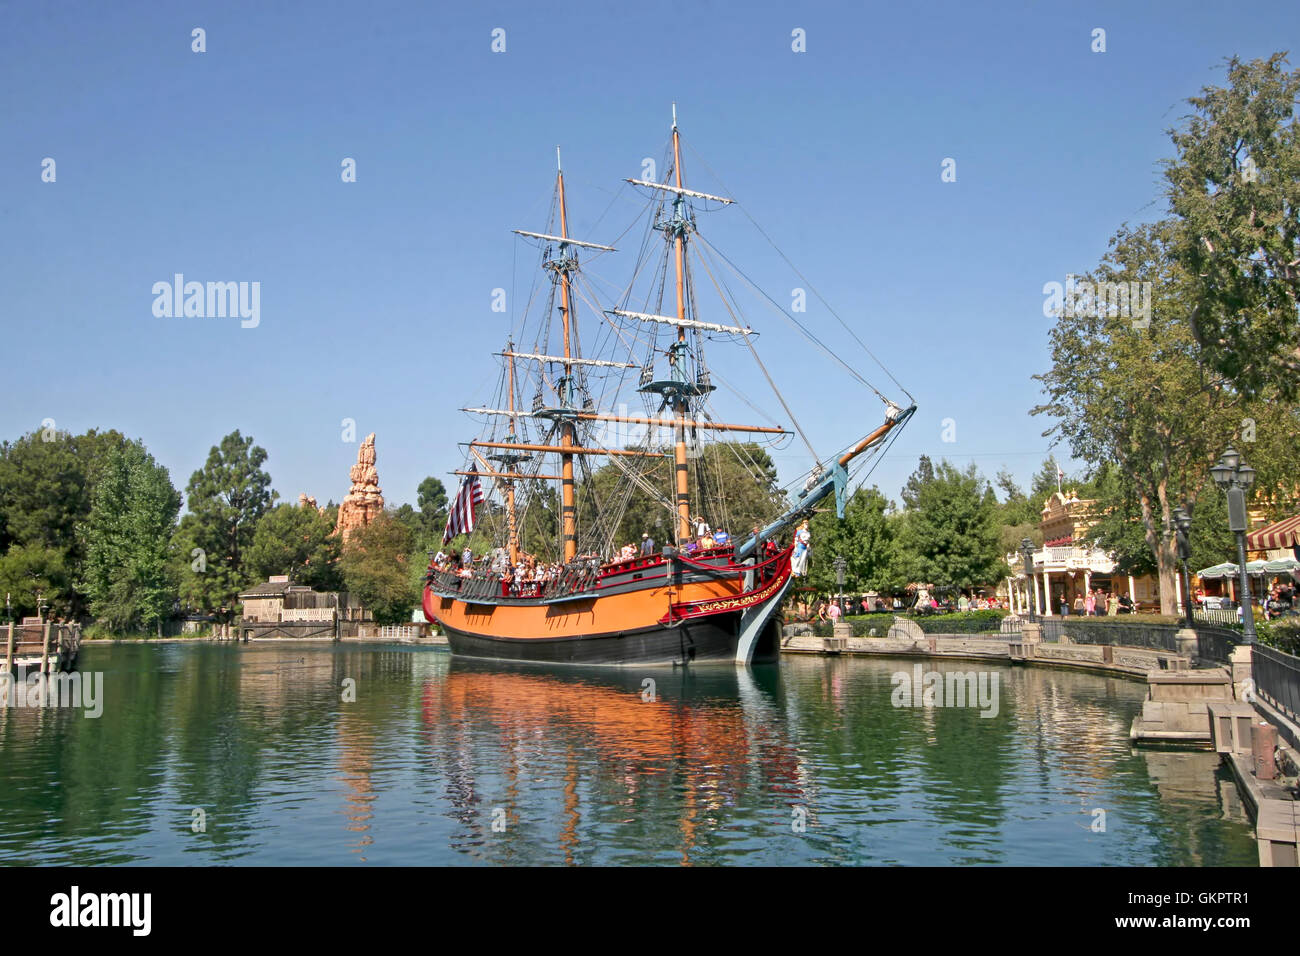 Anaheim, Kalifornien. 16. September 2009. Das Segeln Schiff Columbia auf der Rivers of America im Disneyland. Stockfoto